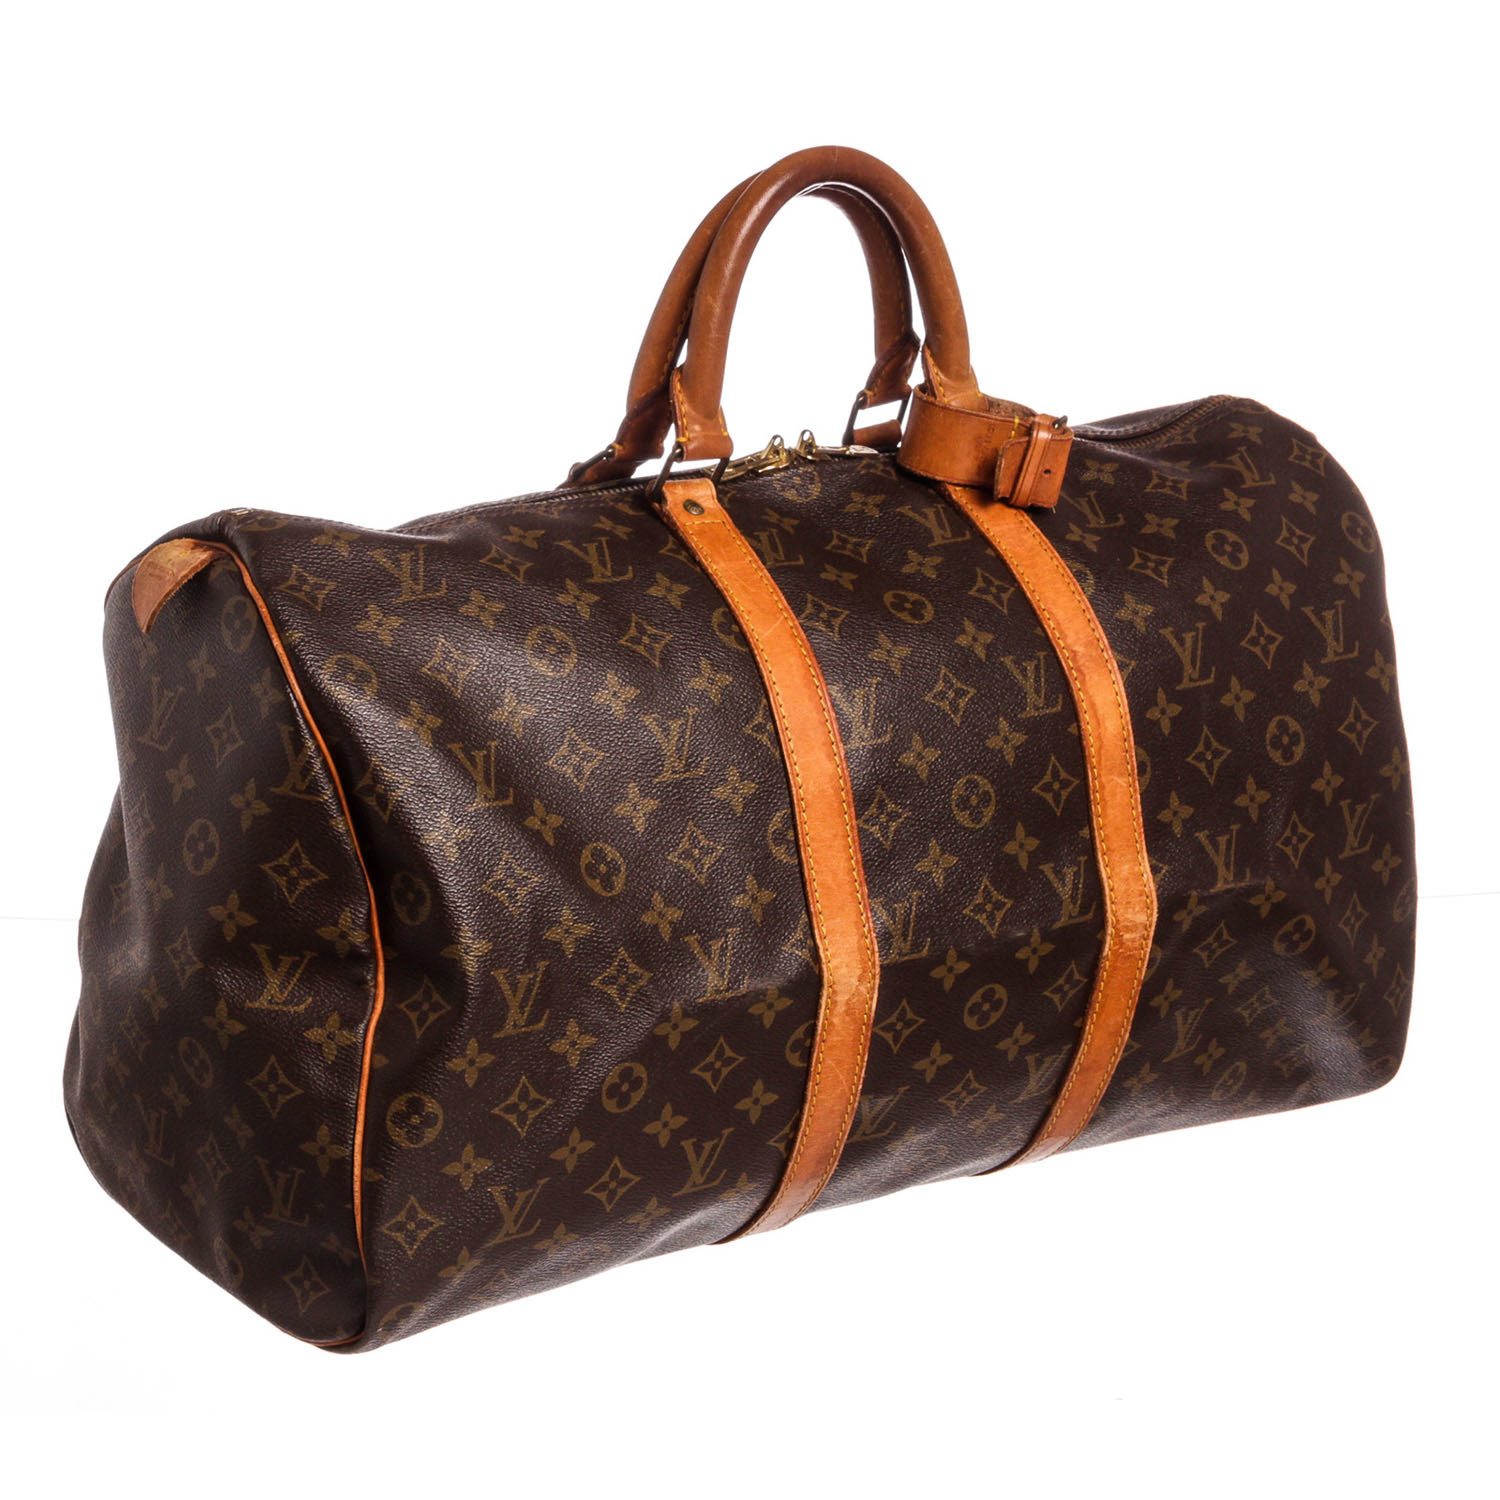  Louis  Vuitton  Monogram Keepall 50 Duffle  Bag  FH0950 